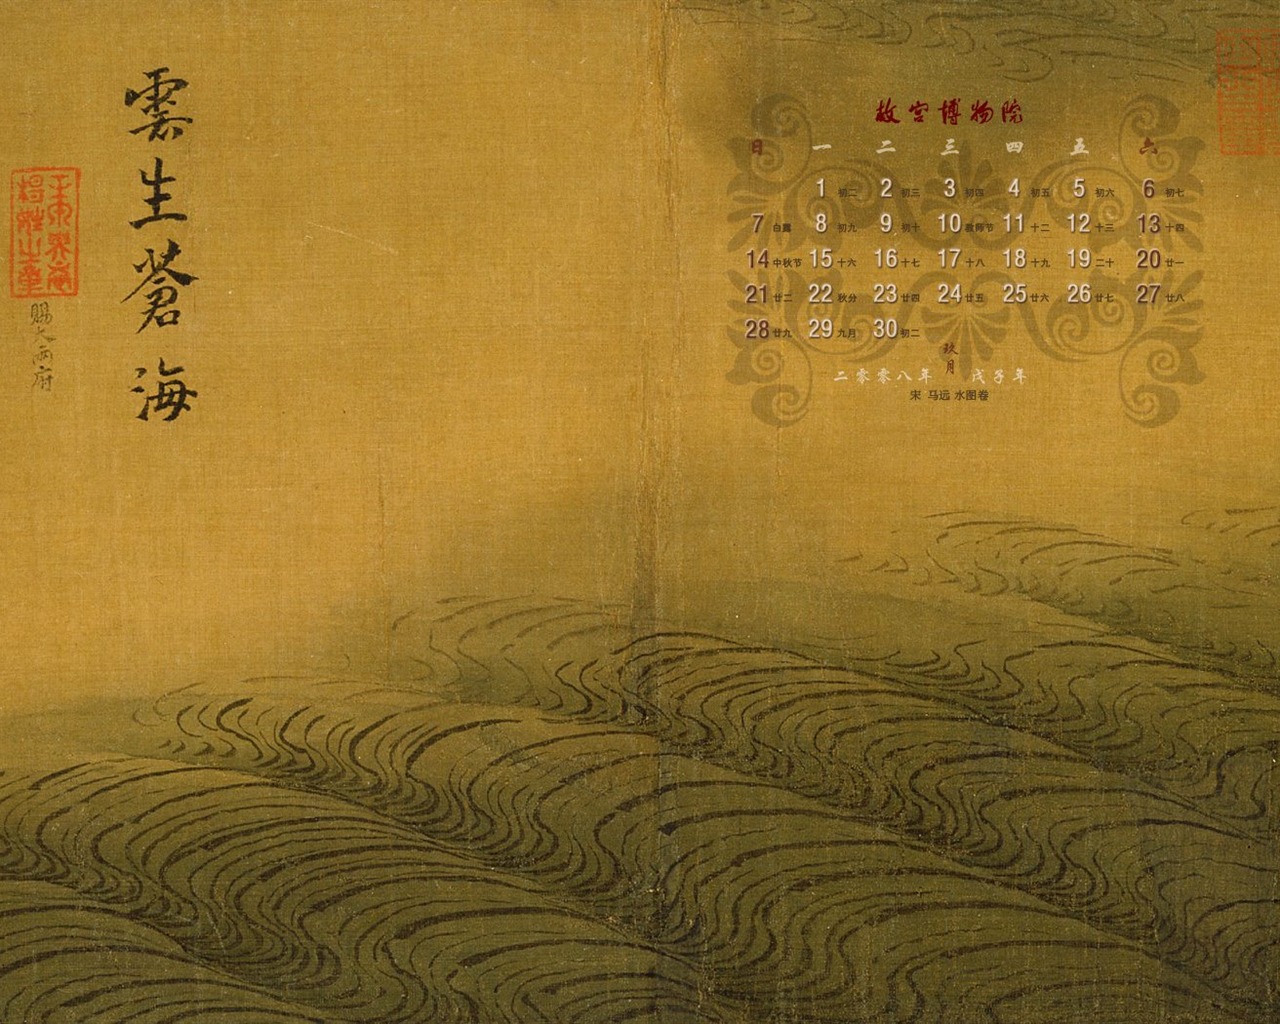 北京故宫博物院 文物展壁纸(二)15 - 1280x1024